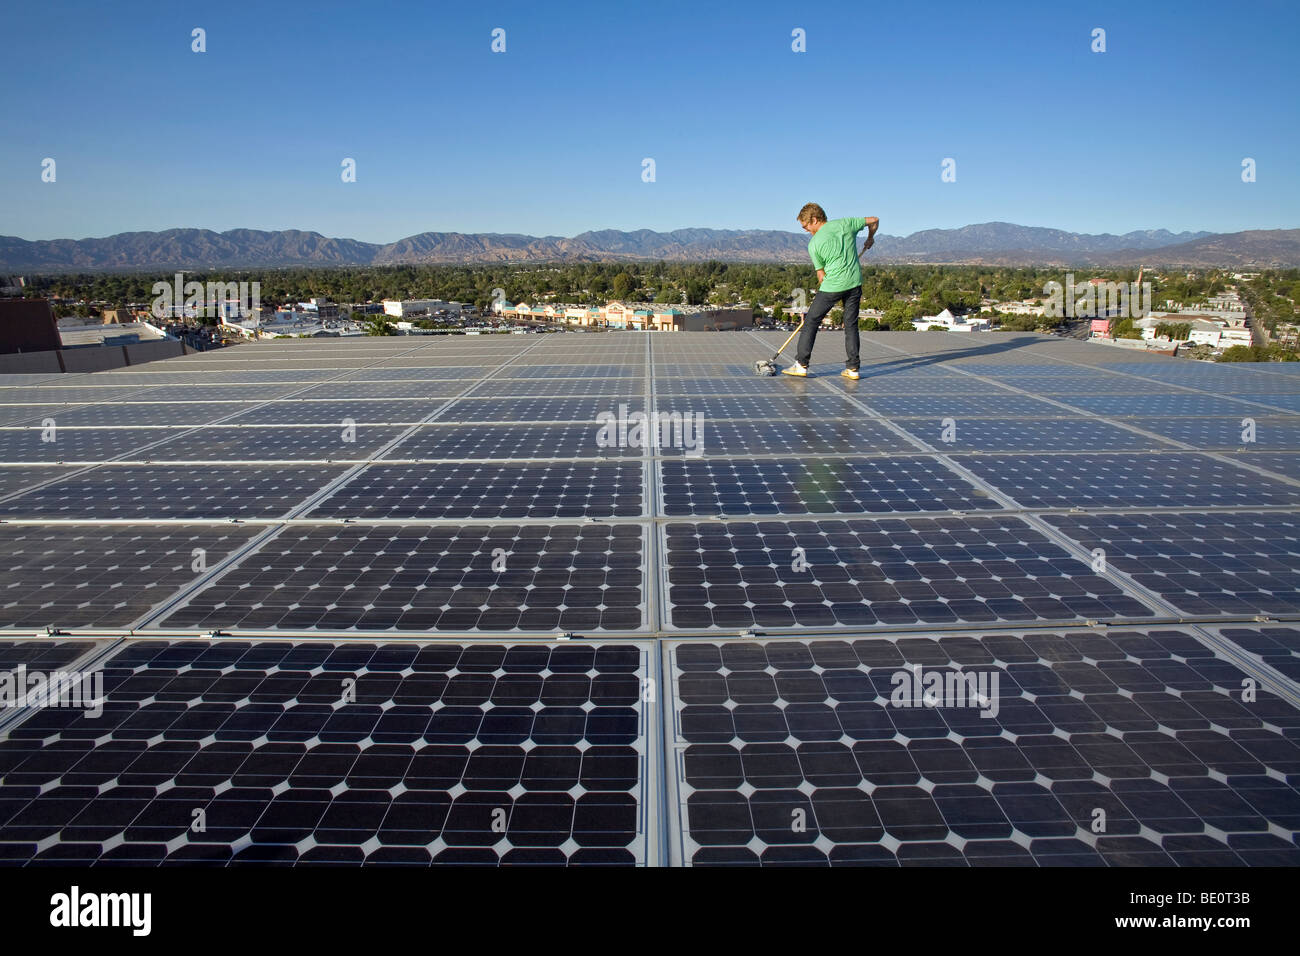 Pulizia dei pannelli solari. Array sul tetto dell'edificio per uffici nella città di Panorama, Valle di San Fernando, Los Angeles, California, Stati Uniti d'America Foto Stock